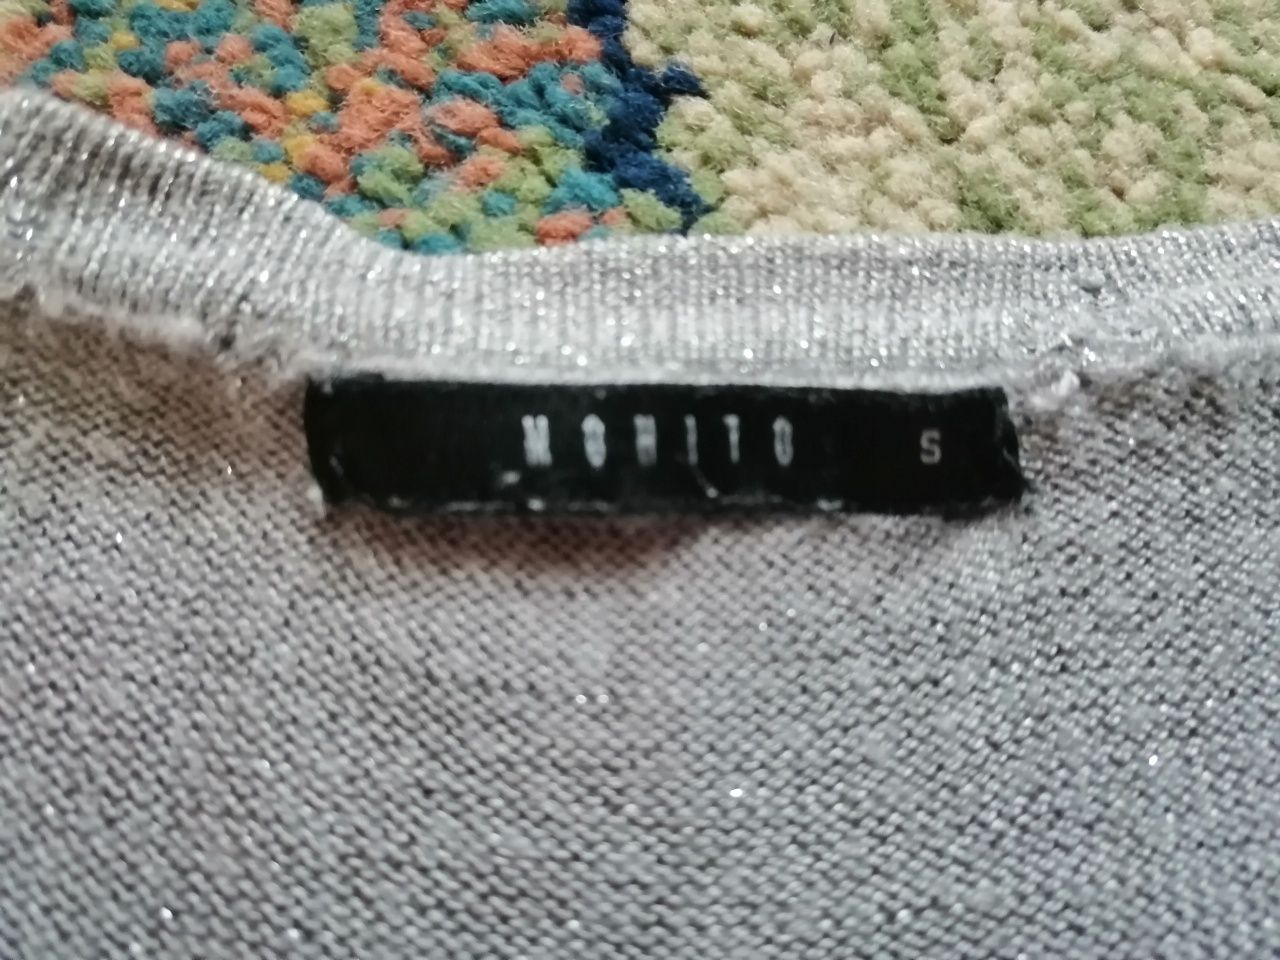 Sweterek srebrny Mohito S